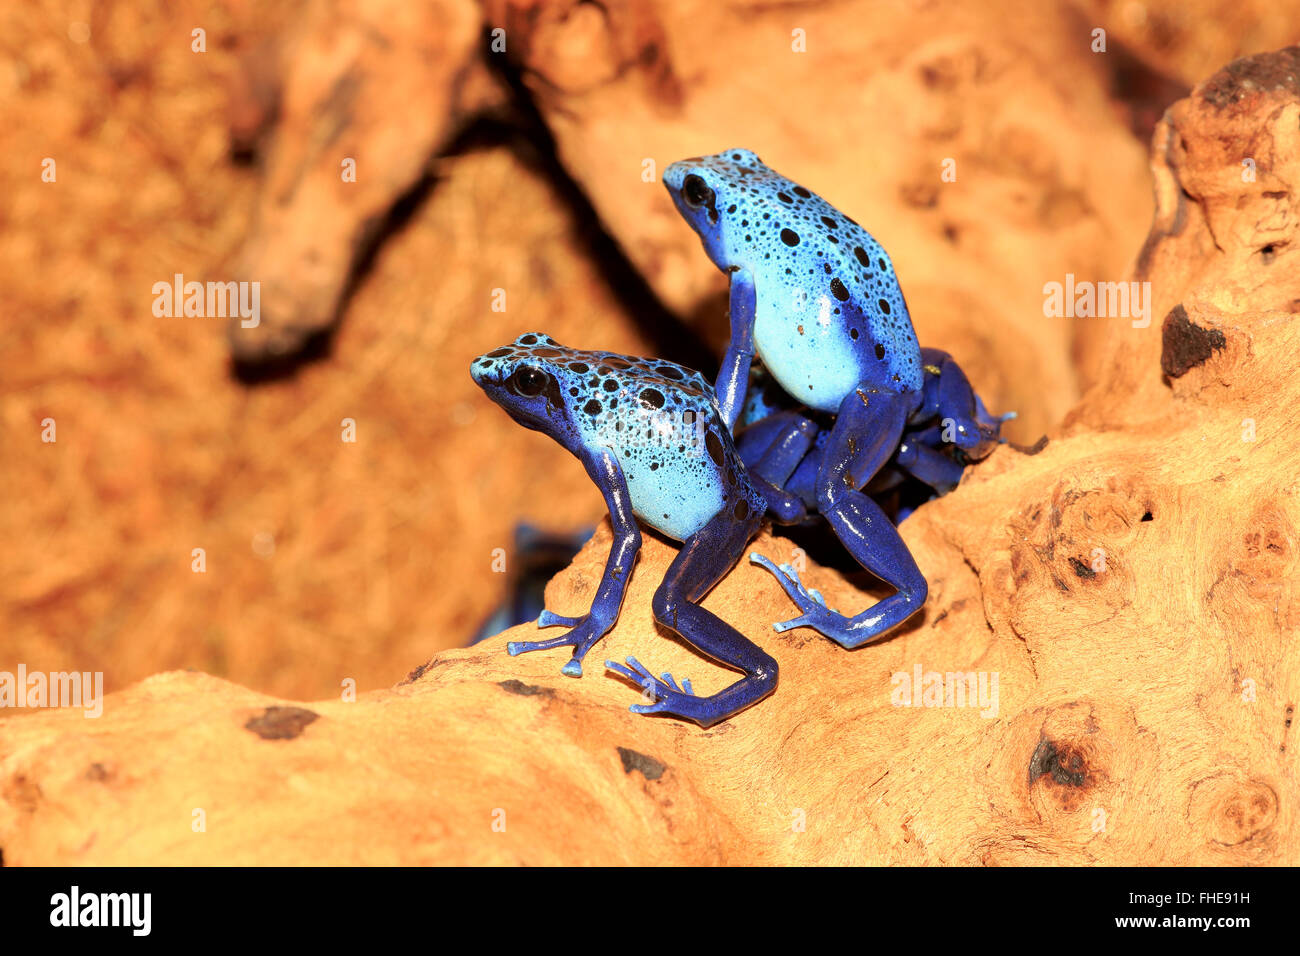 Blue poison dart frog, adulte, en Amérique du Sud / (Dendrobates azureus) Banque D'Images